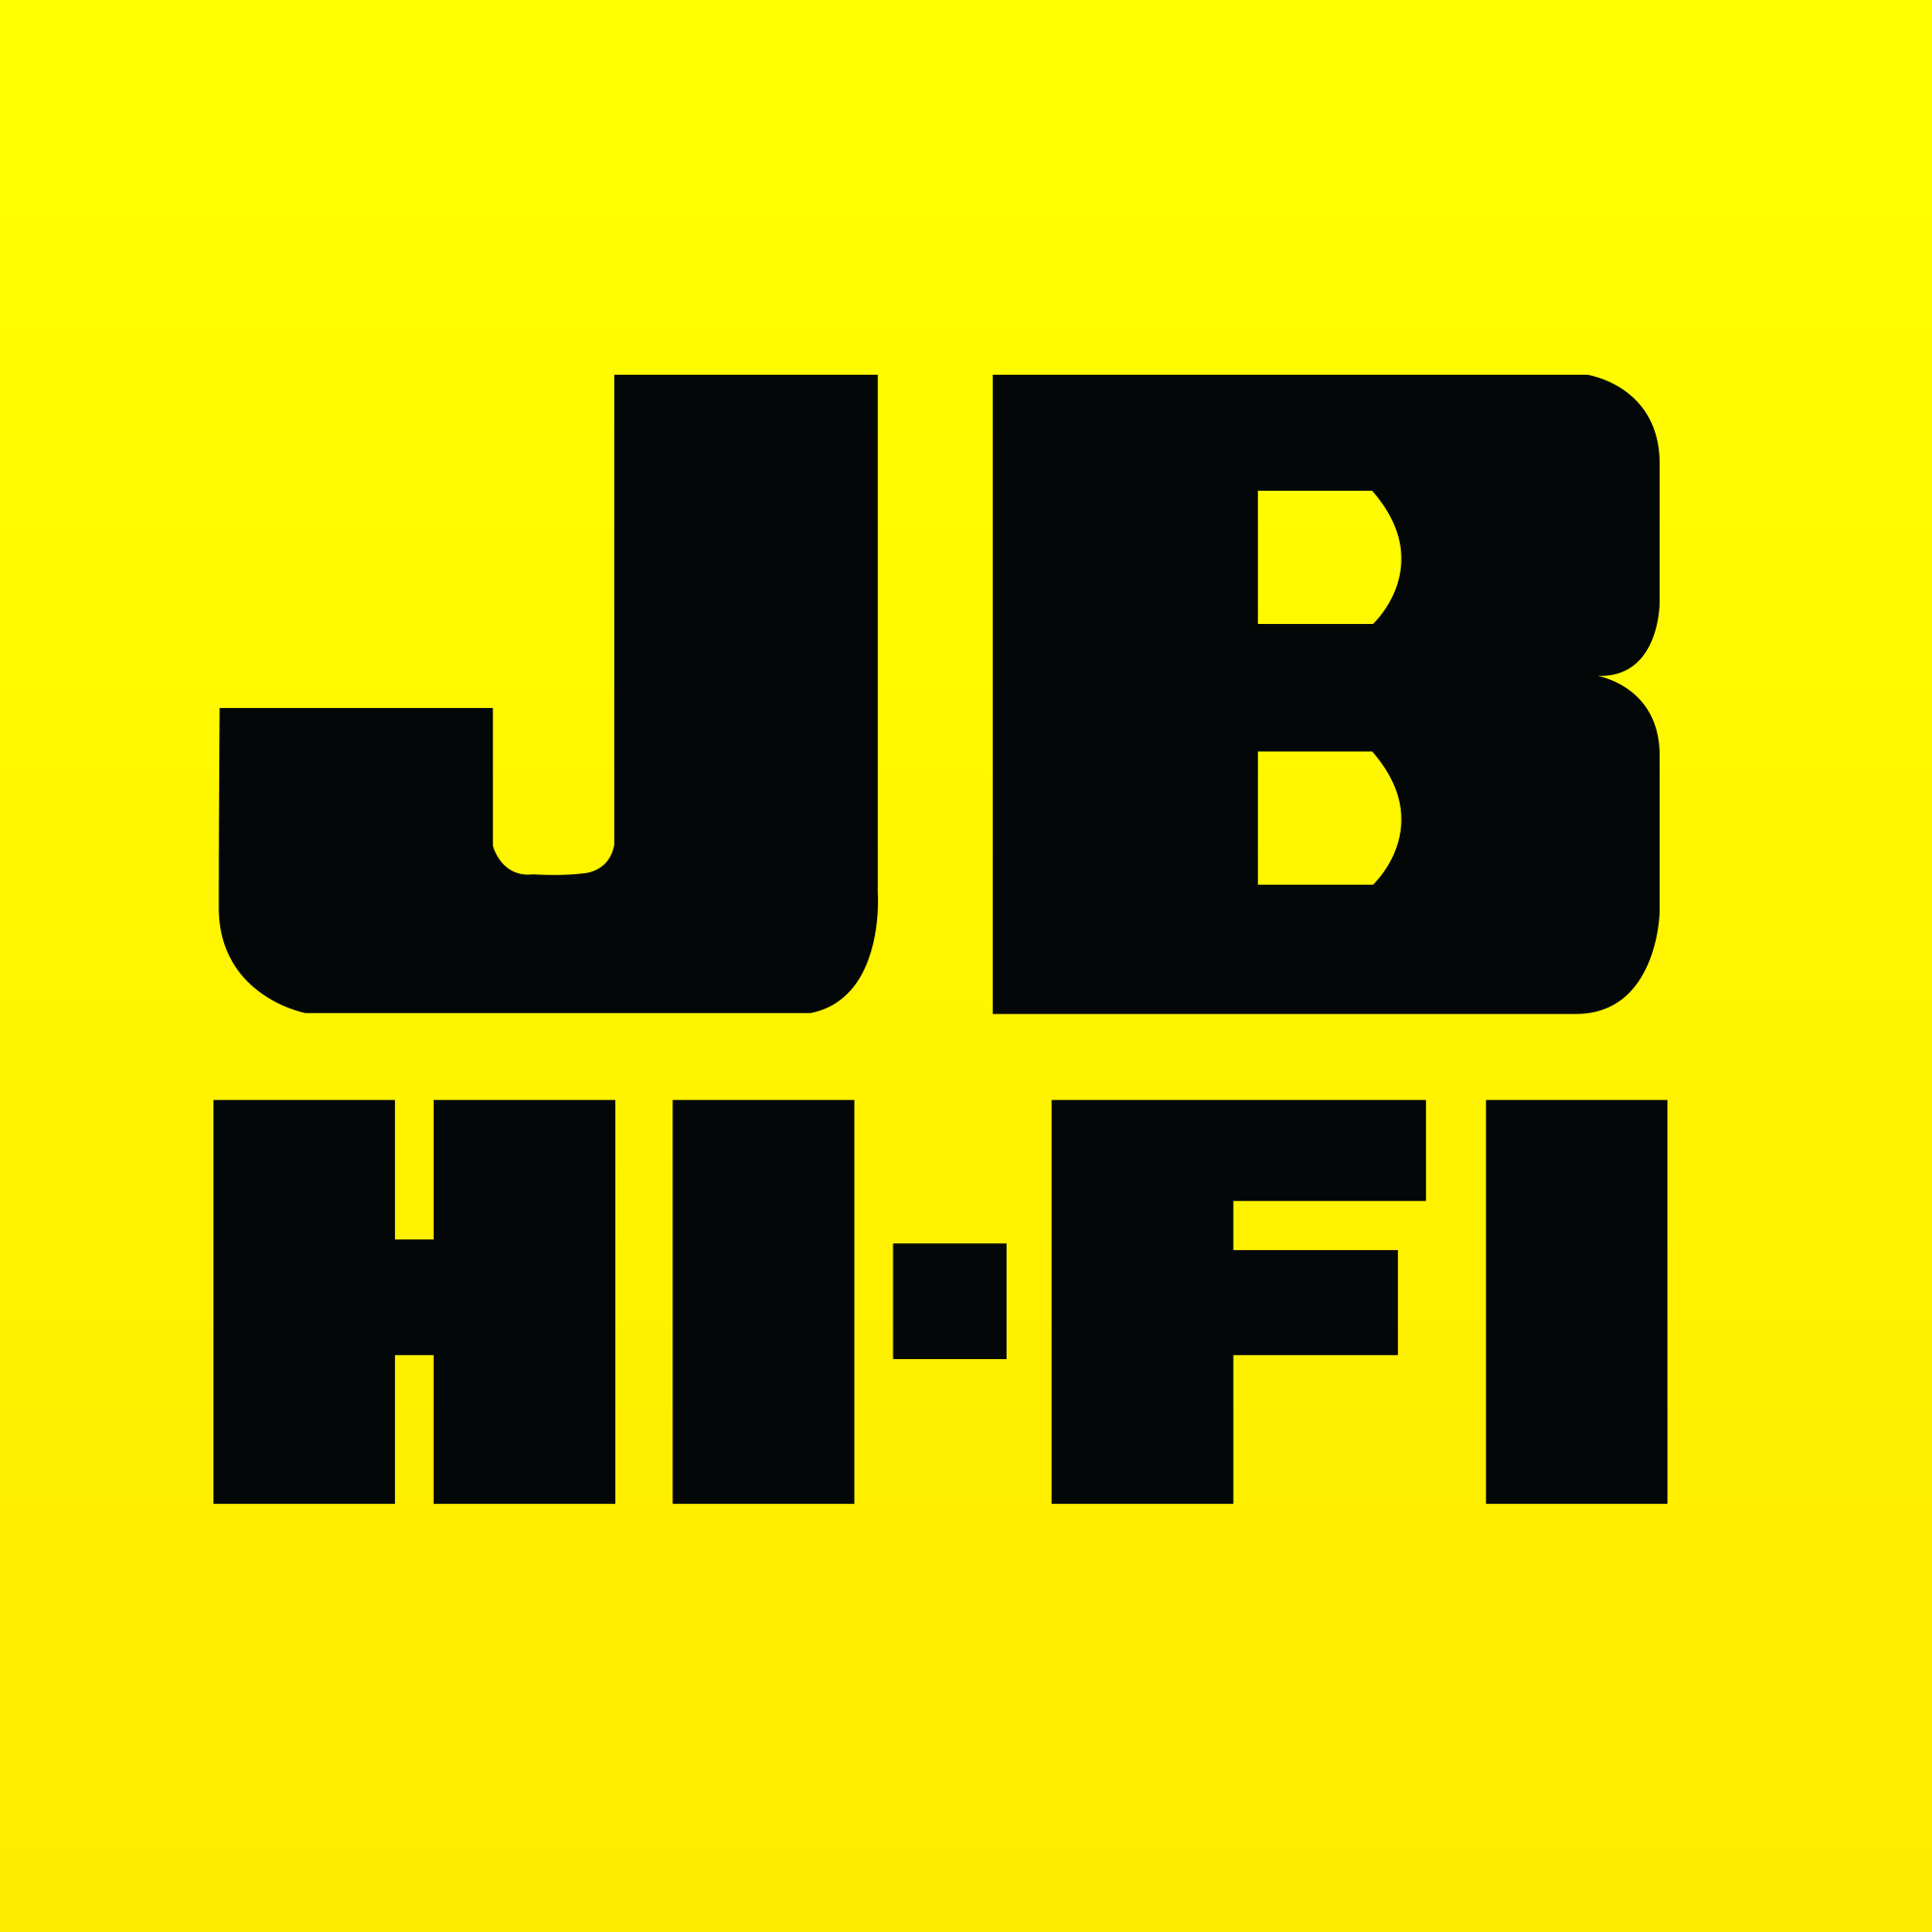 JB Hi-Fi Logo